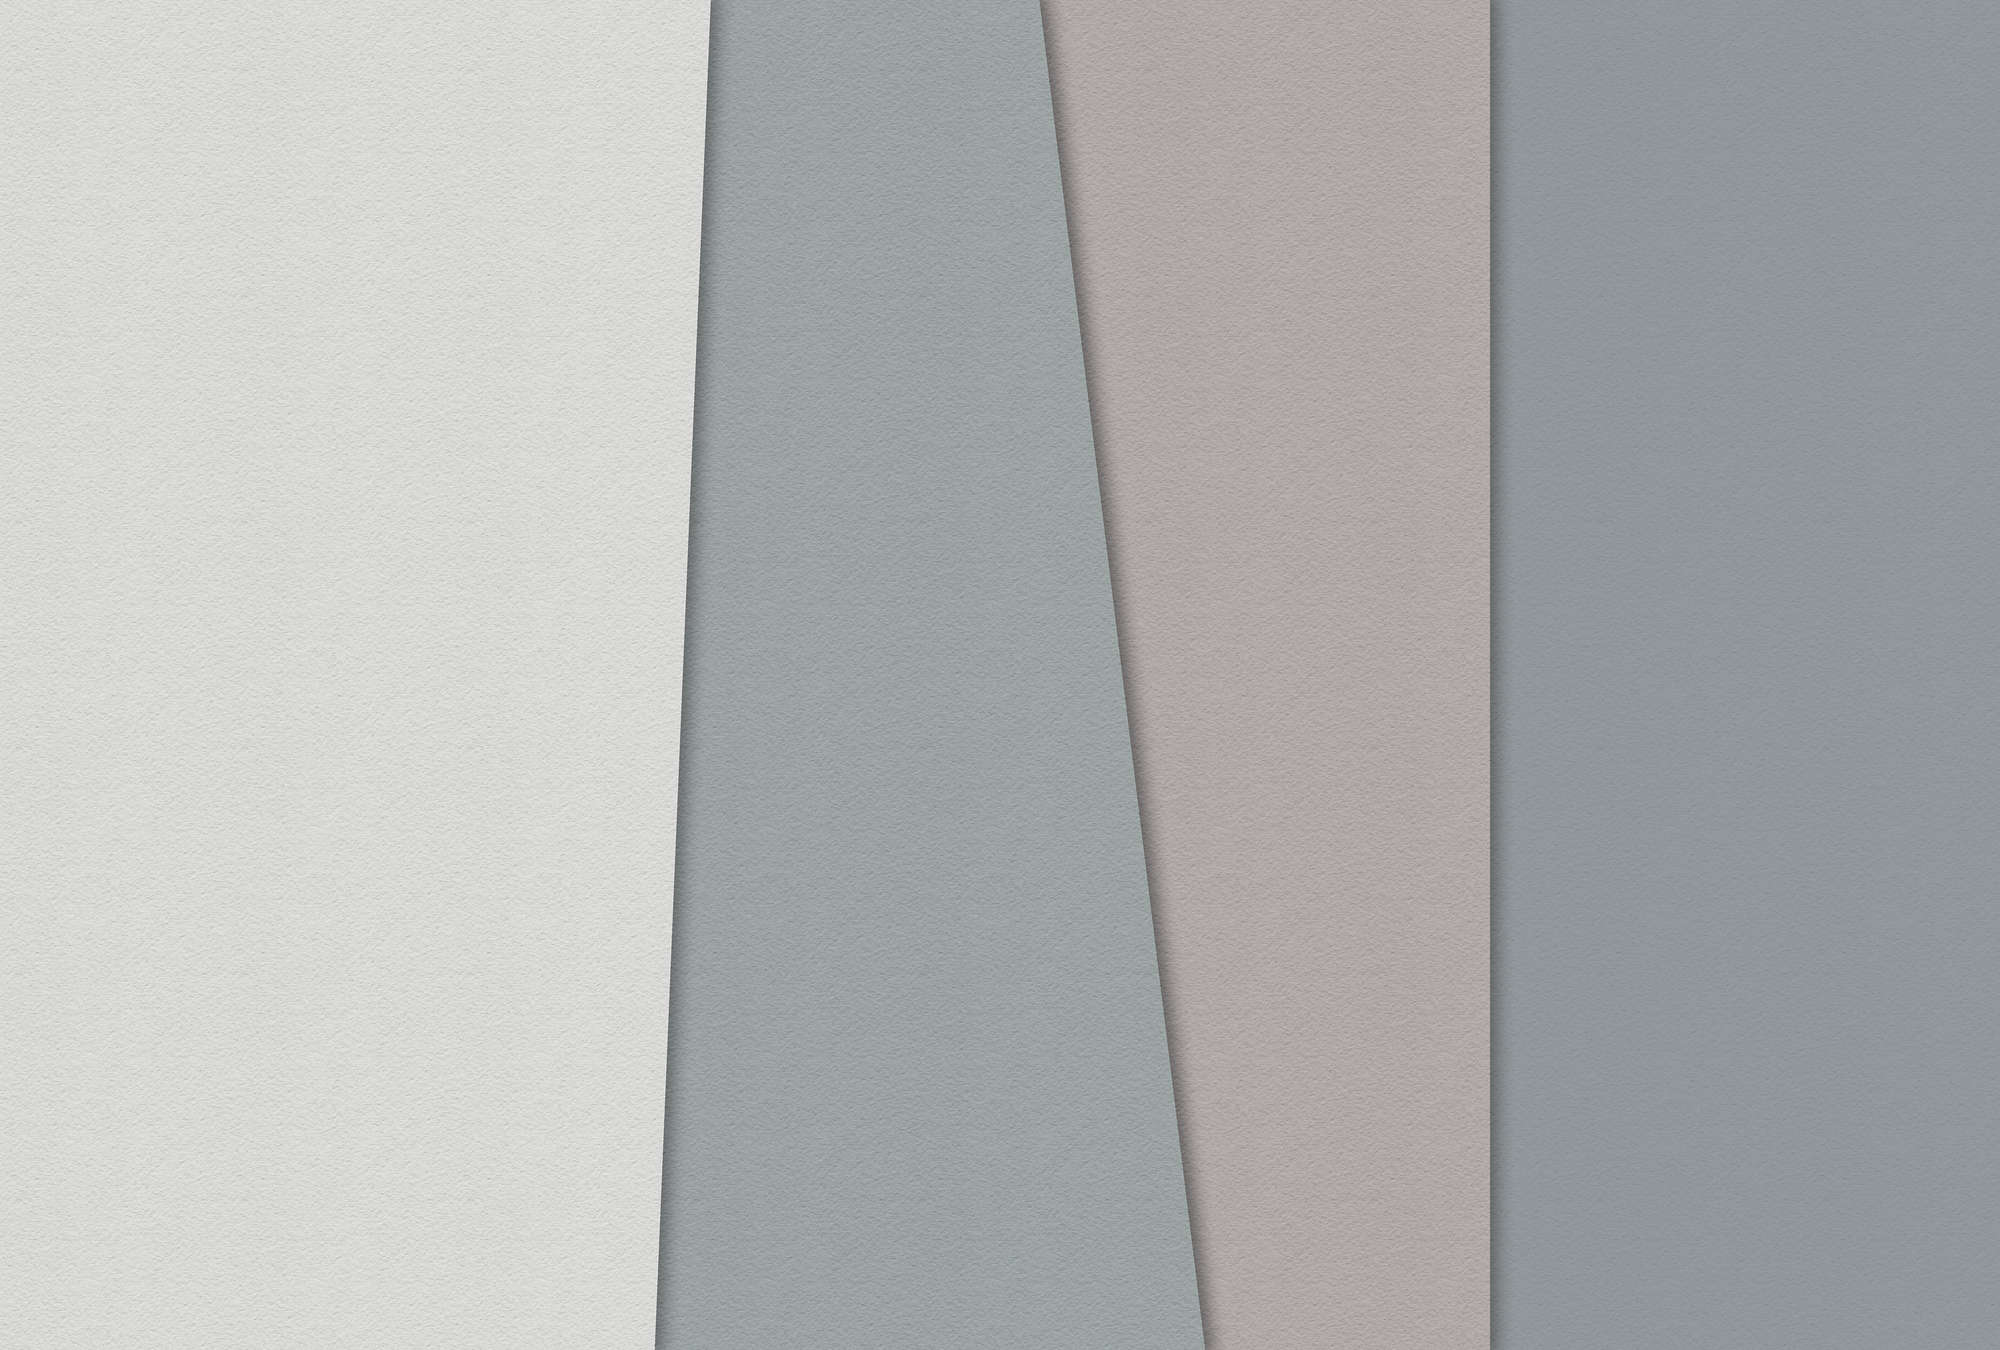             Gelaagd papier 1 - Grafisch behang met gekleurde vlakken in handgemaakte papierstructuur - Blauw, Crème | Strukturen vlieseline
        